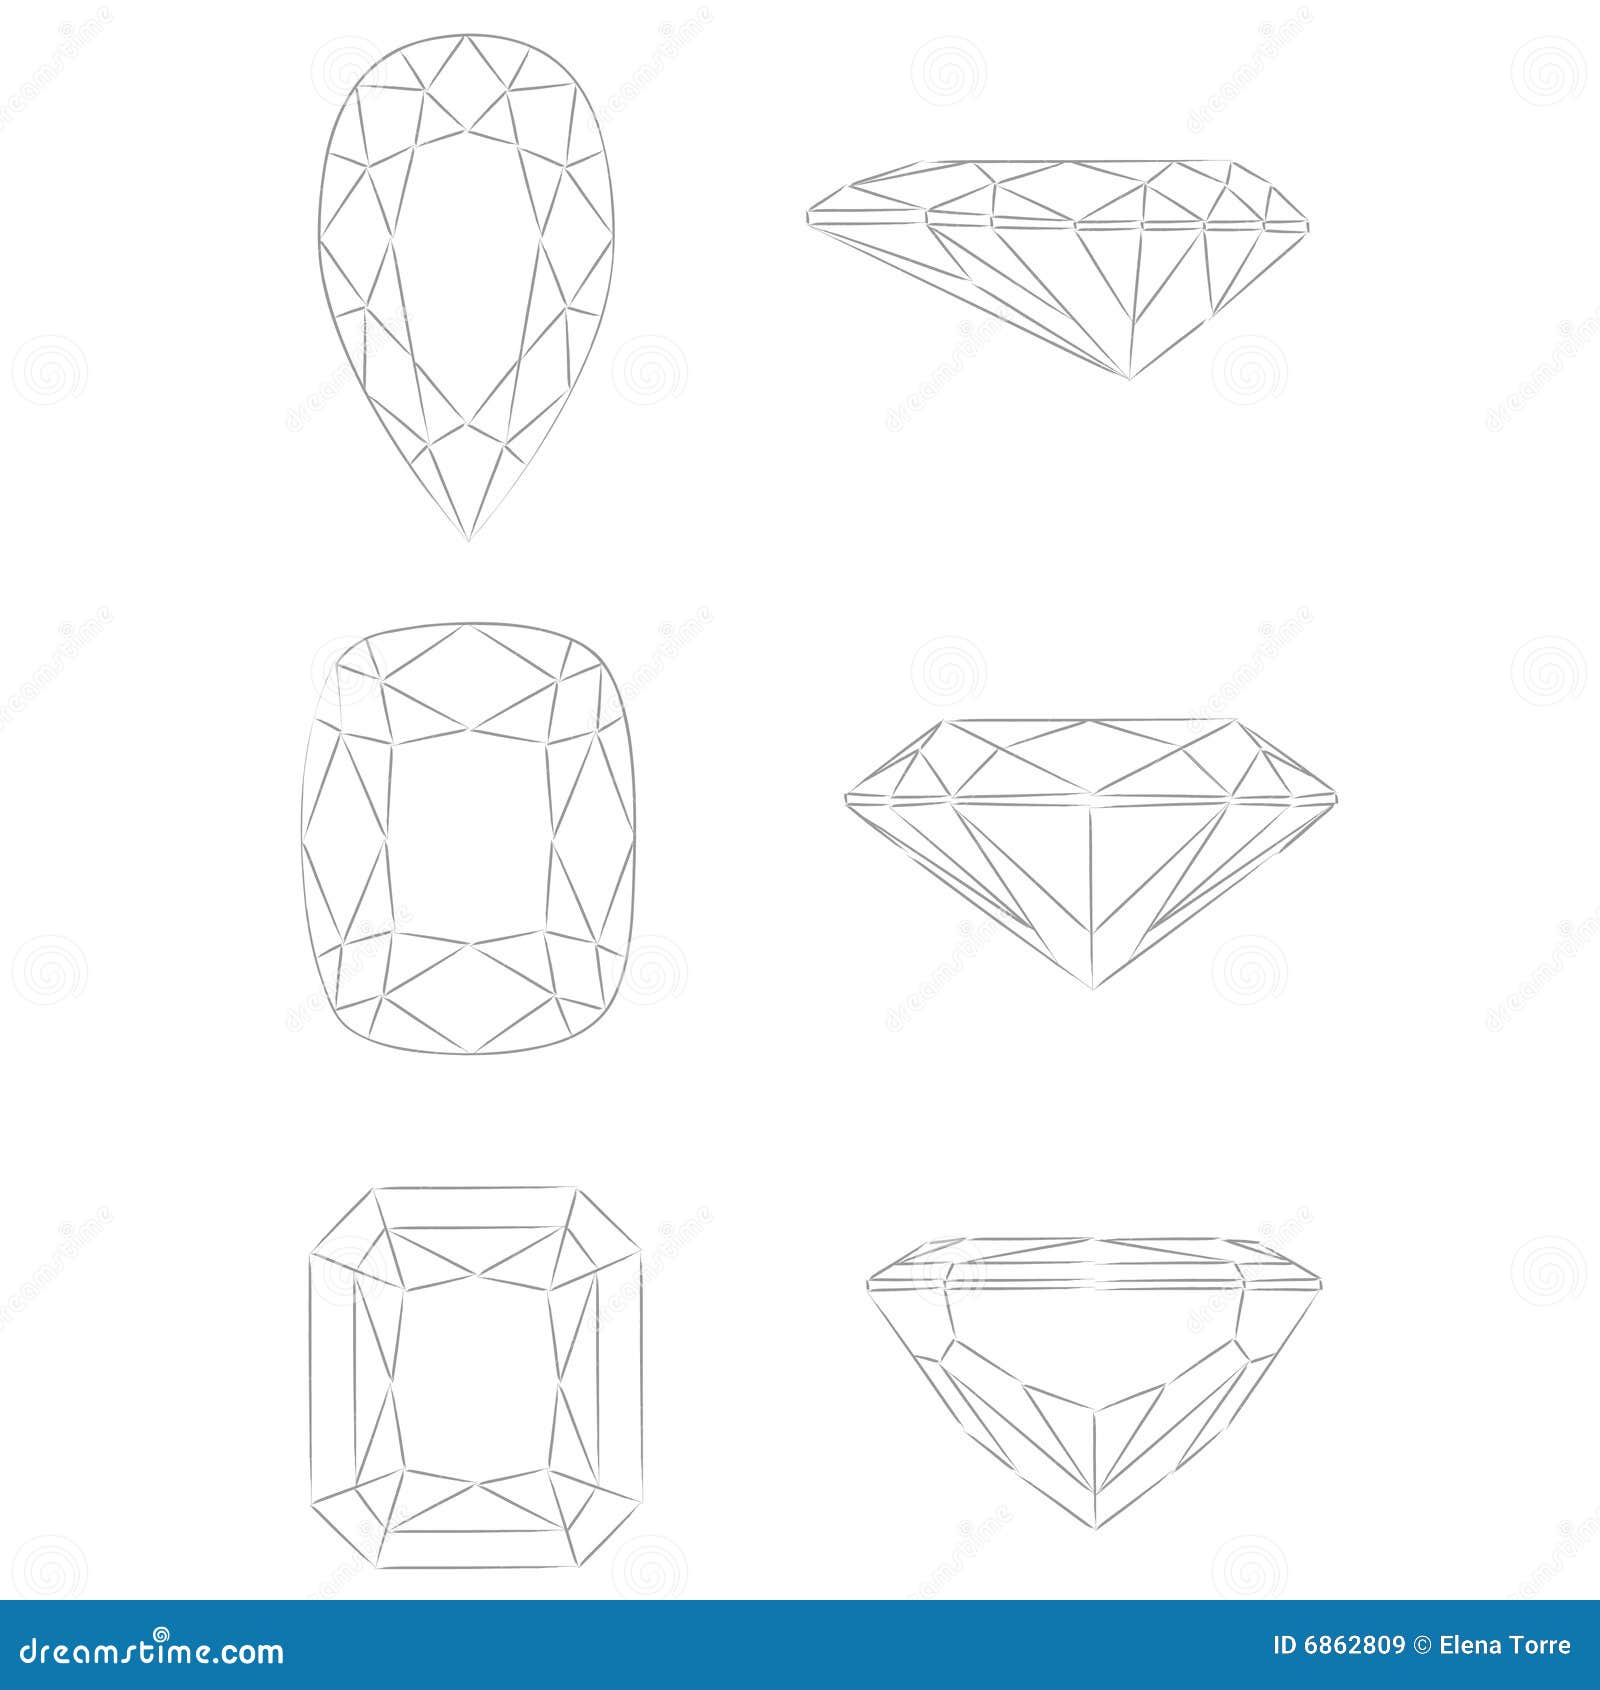 diamond s : pear - cushion - radiant